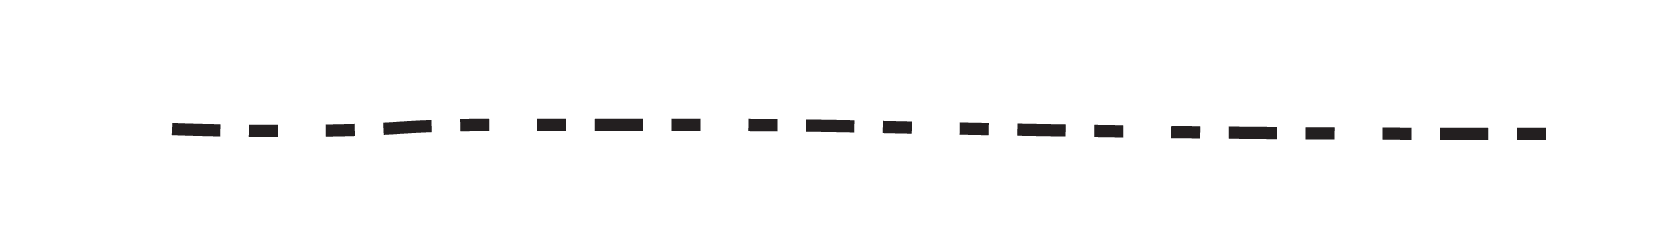 Línea punteada de rastreo imagen Transparente PNG